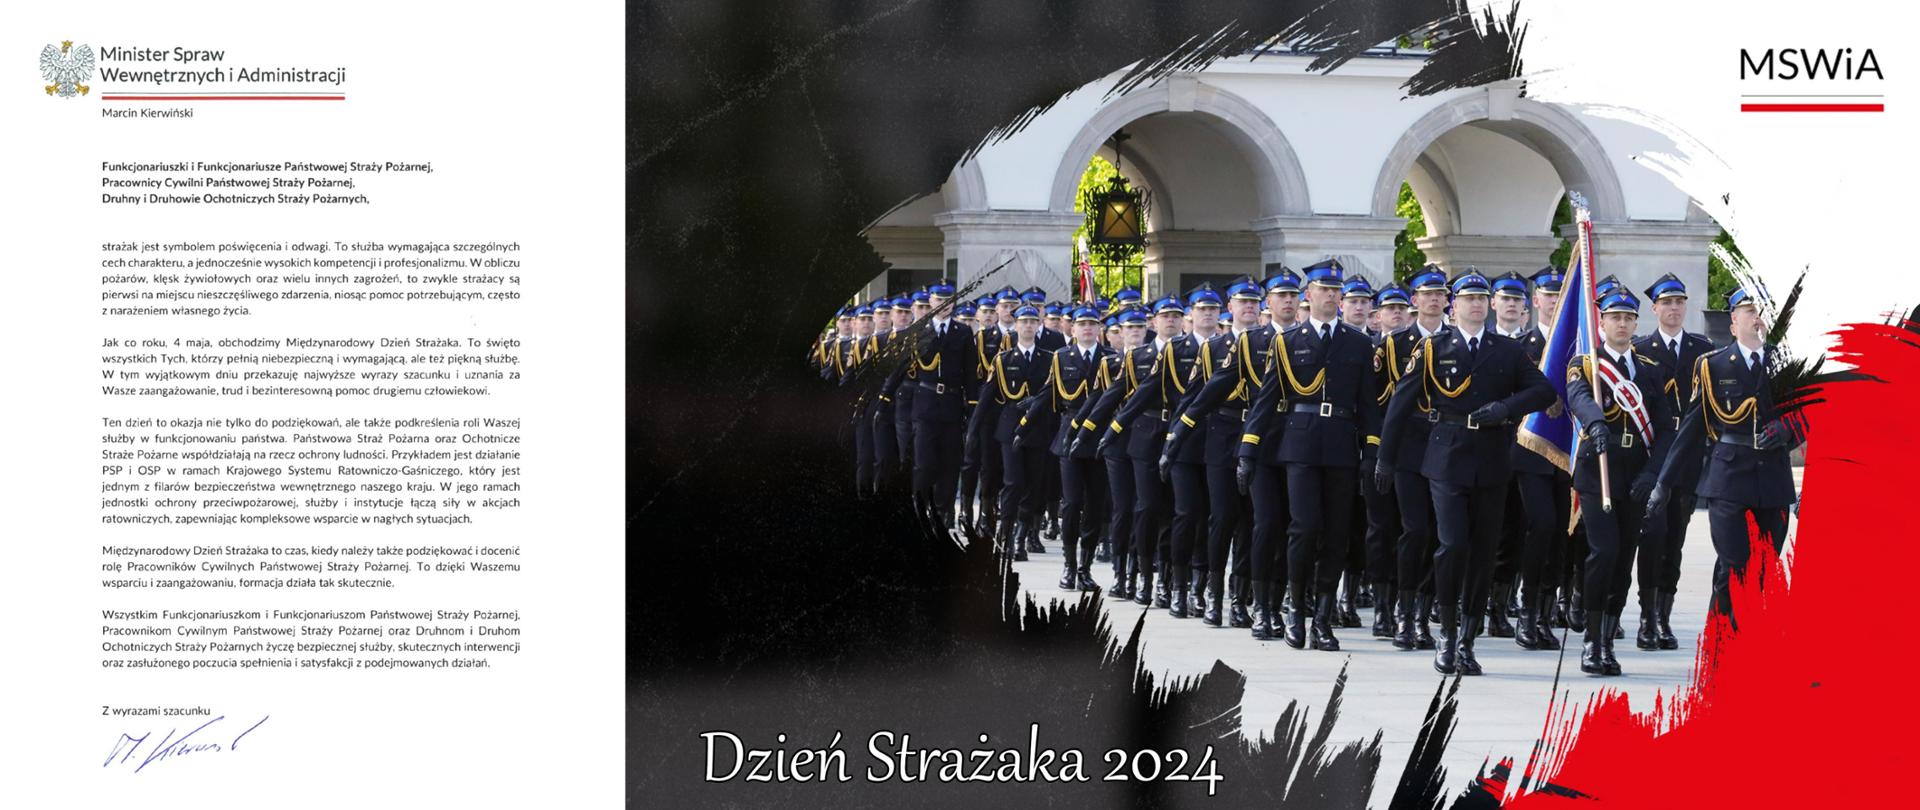 zdjęcie zawiera Życzenia Ministra Spraw Wewnętrznych i Administracji z okazji Dnia Strażaka oraz napis Dzień strażaka 2024